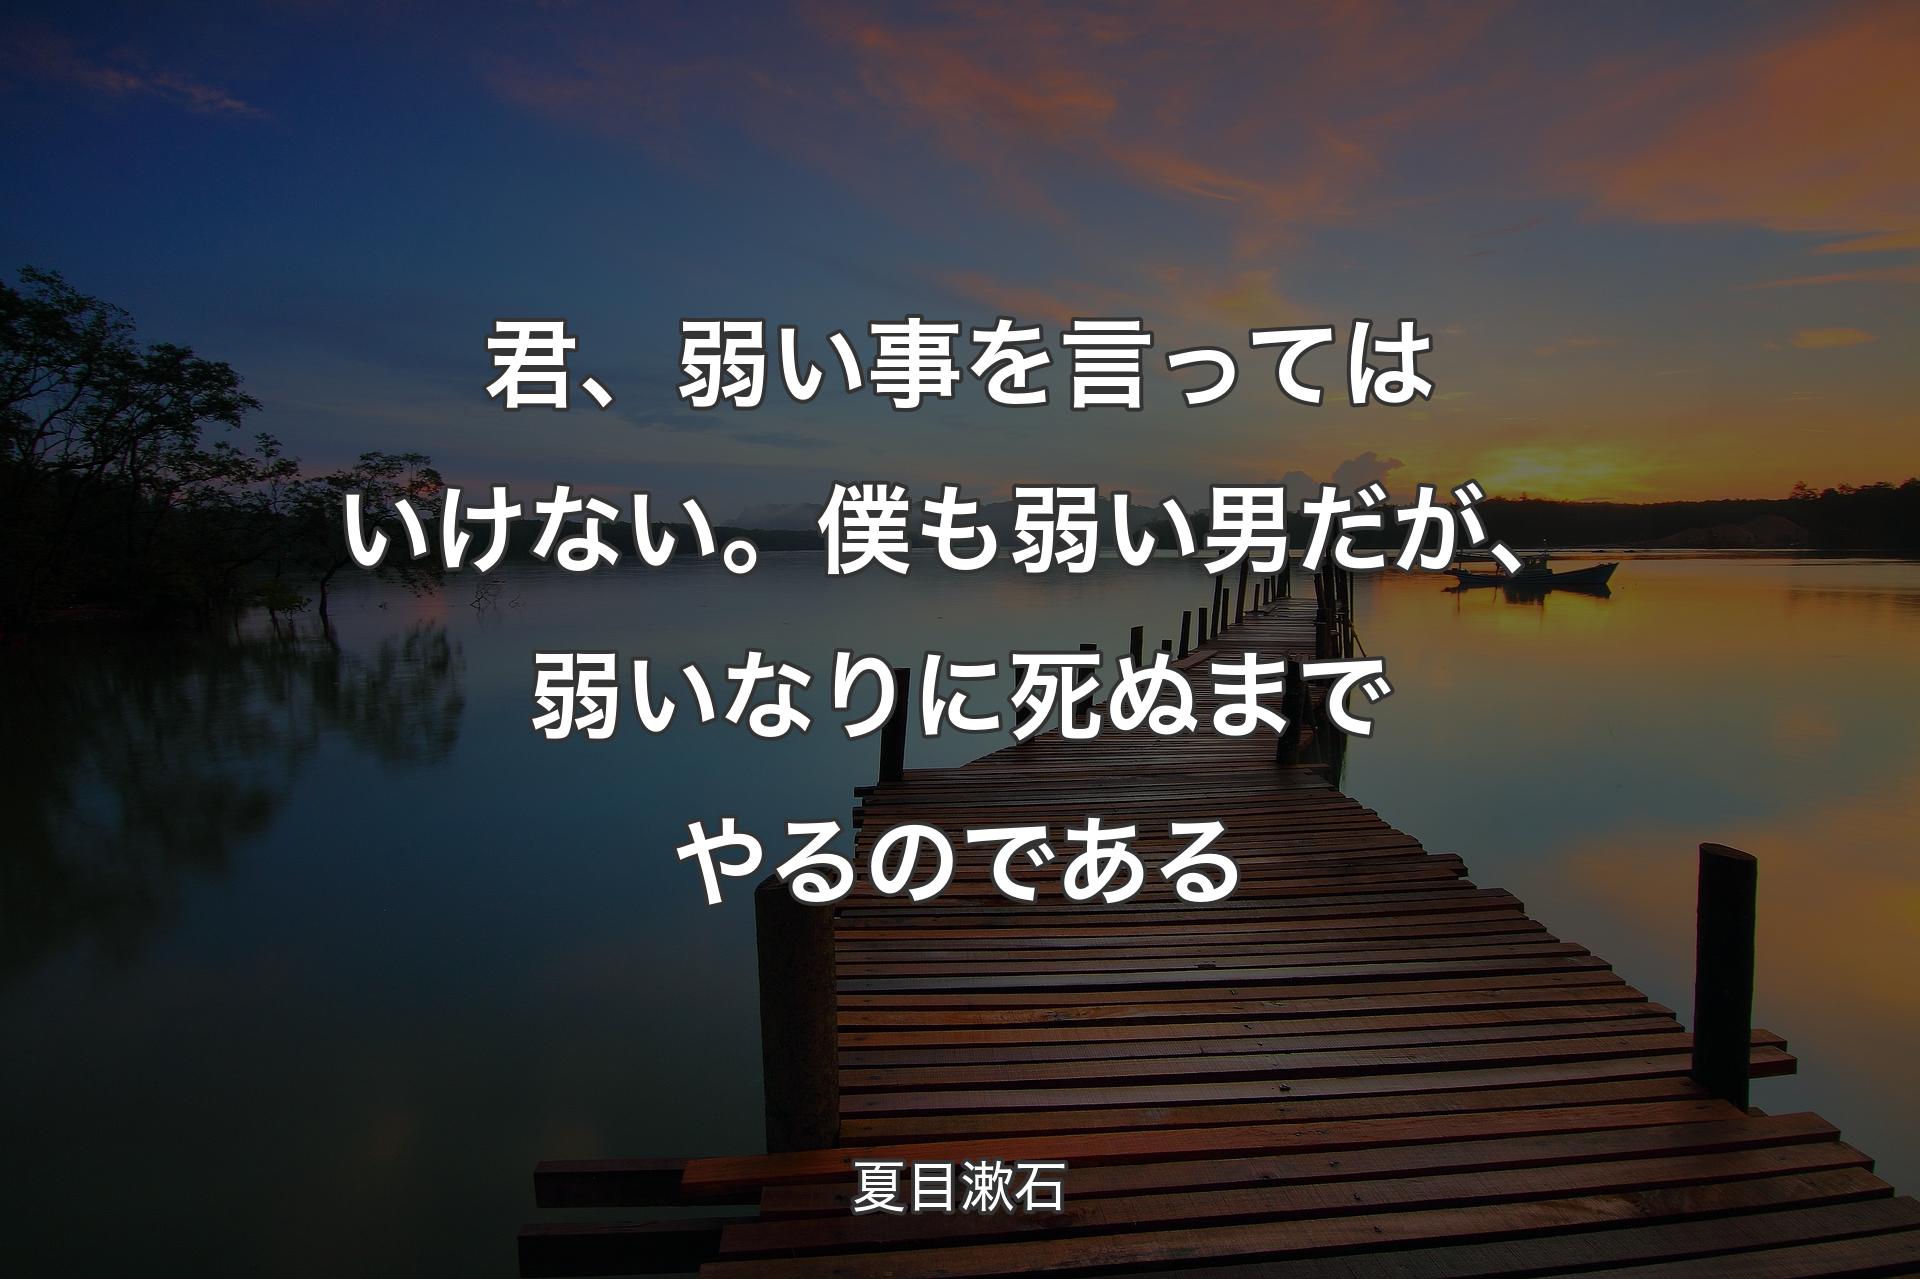 【背景3】君、弱い事を言ってはいけない。僕も弱い男だが、弱いなりに死ぬまでやるのである - 夏目漱�石